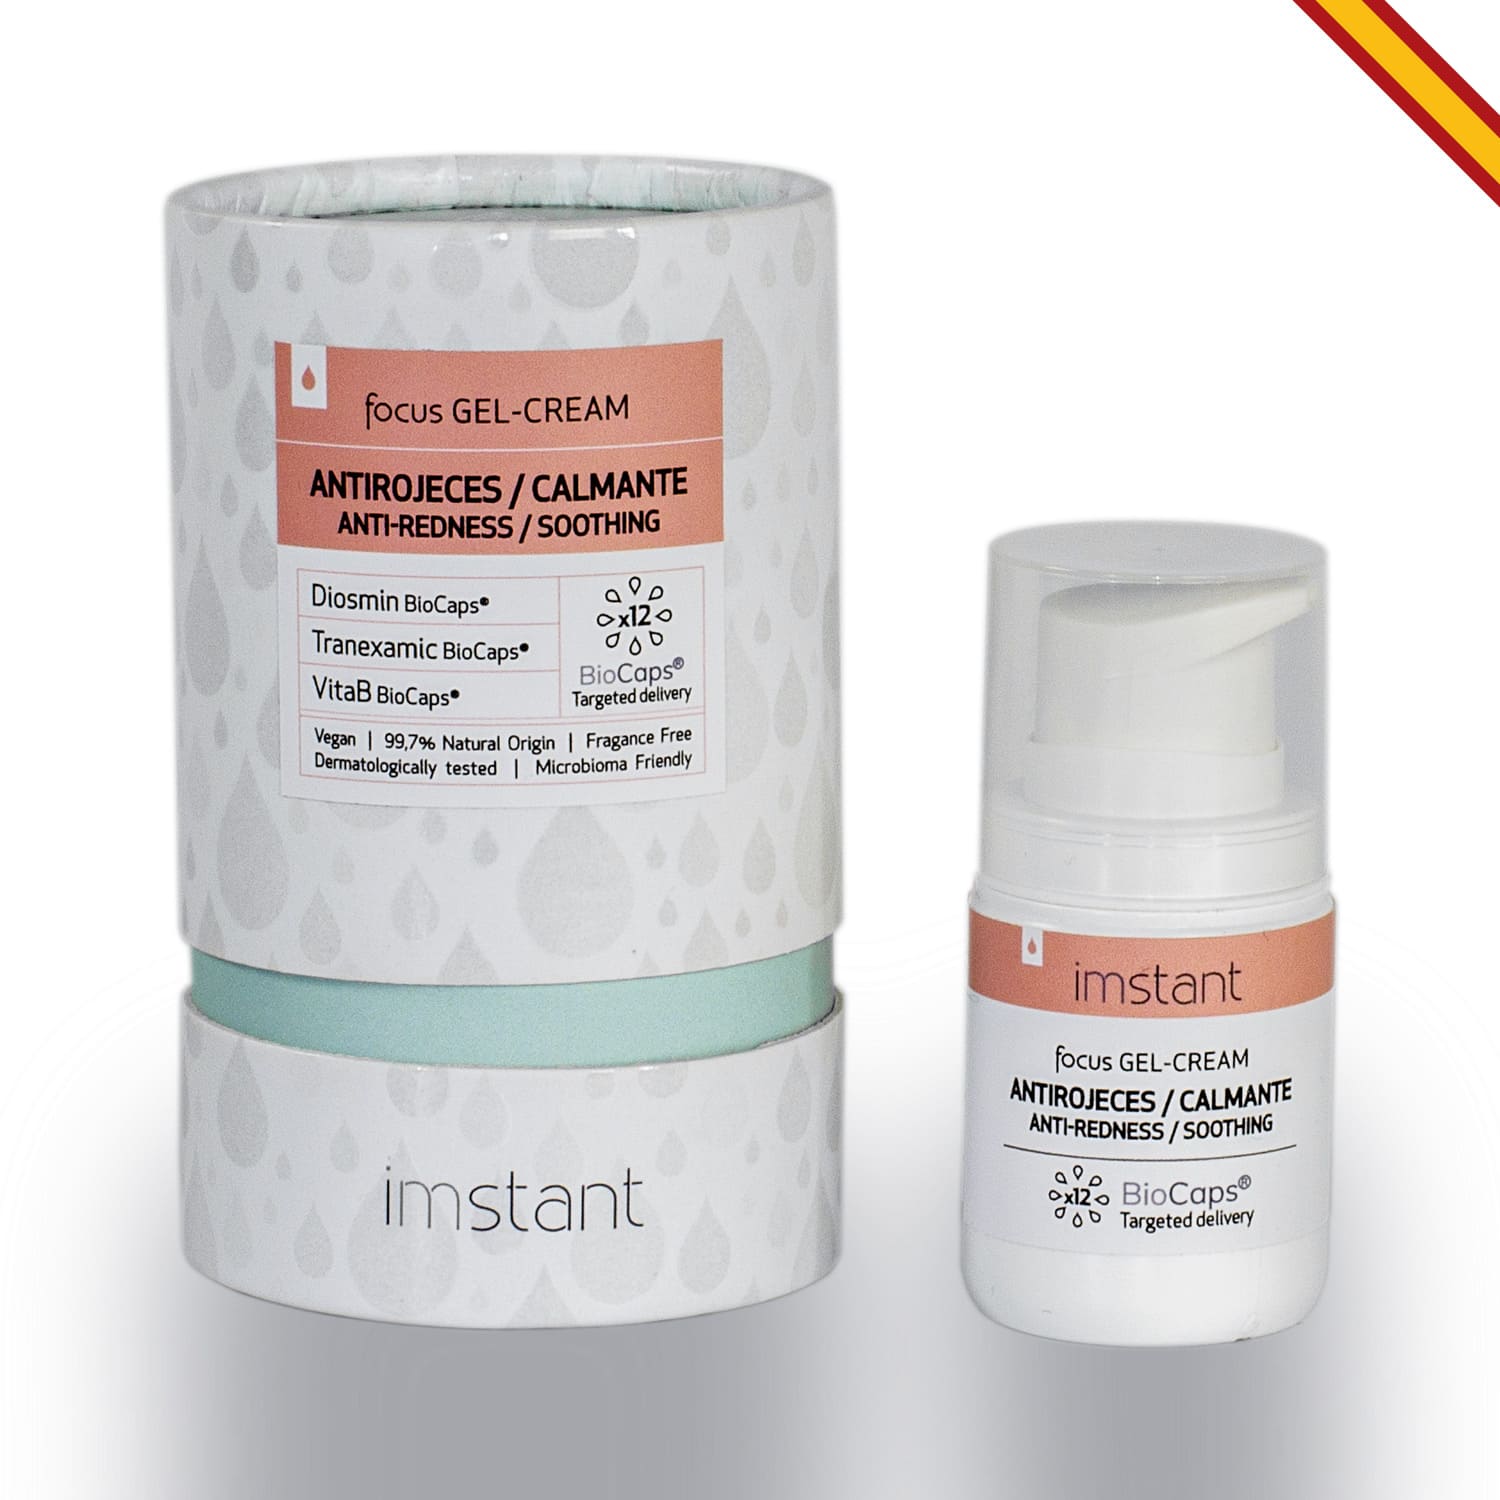 IMSTANT - IMSTANT Focus Línea Antirrojeces Calmante con Niacinamida y Vitaminas B5 y B6 Disponible en Tres Formatos Distintos Crema, Gel-Crema y Booster.